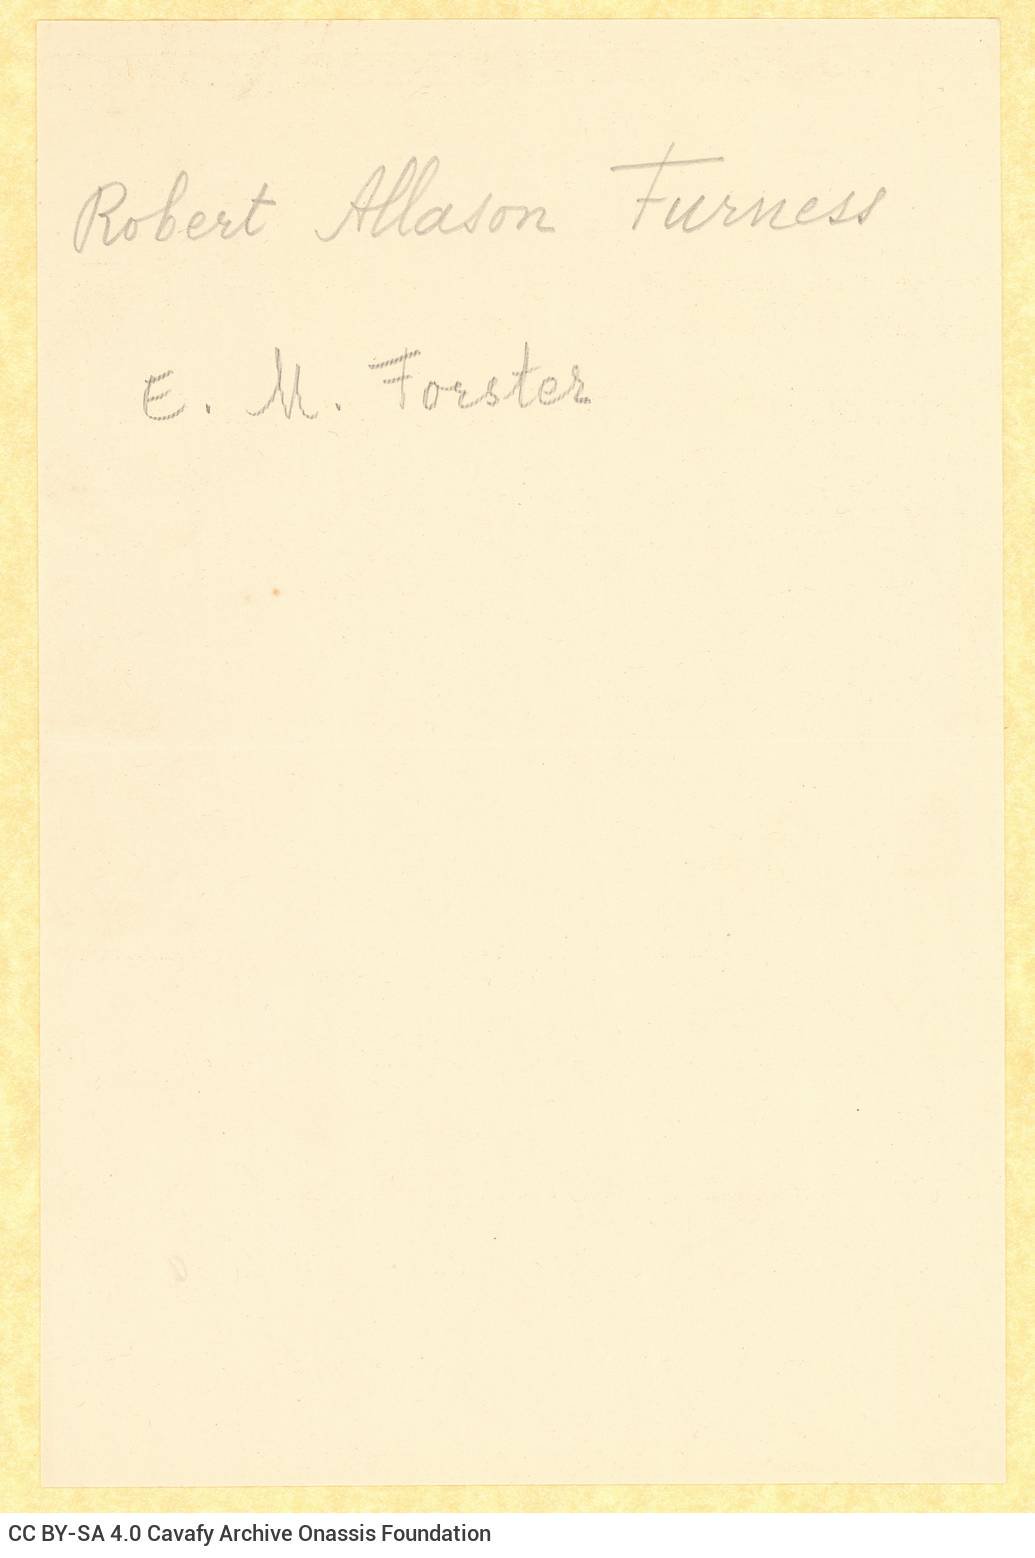 Δακτυλόγραφη επιστολή του Τσαρλς Πρέντις (C. H. C. Prentice) προς τον Ε. Μ. Φό